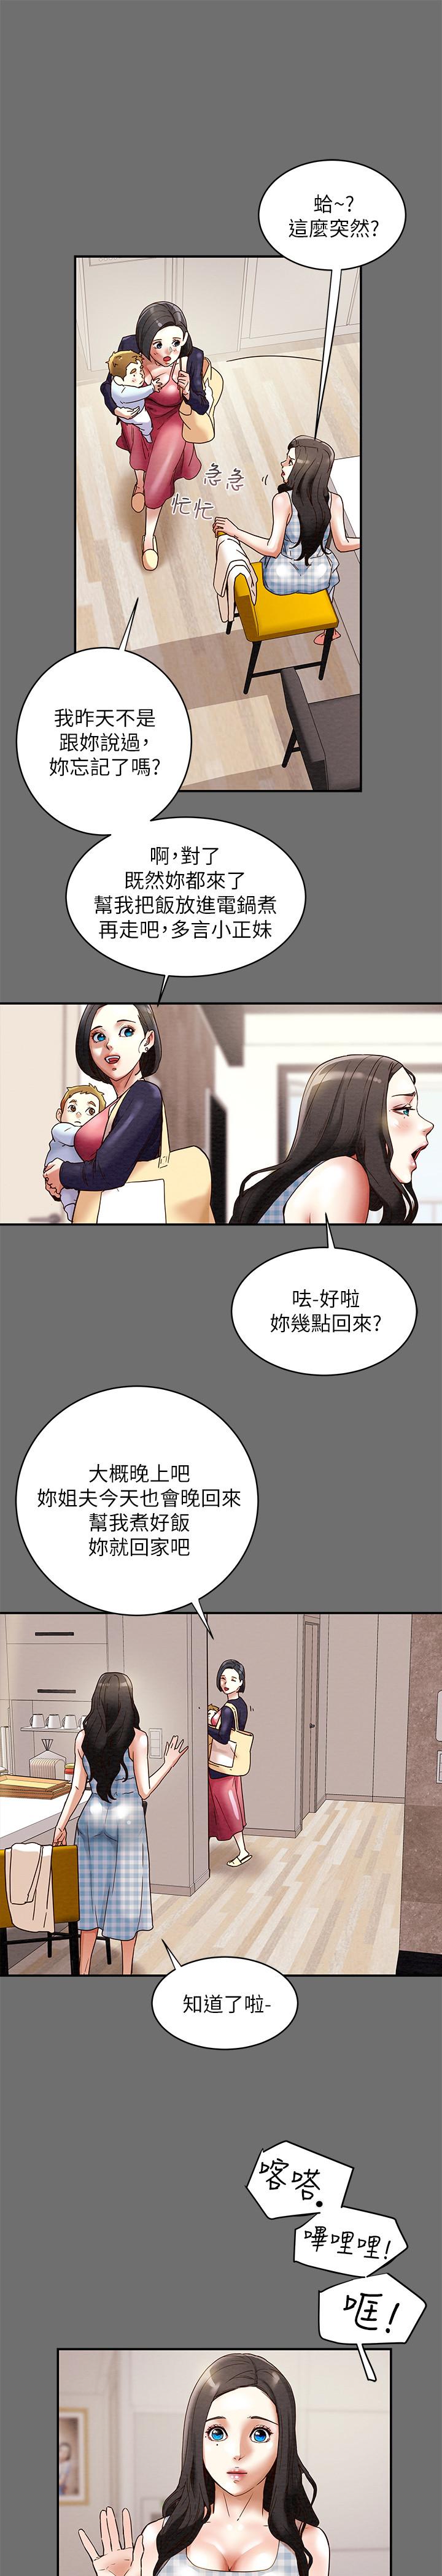 韩国污漫画 純情女攻略計劃 第2话-不能被发现的淫荡面貌 11